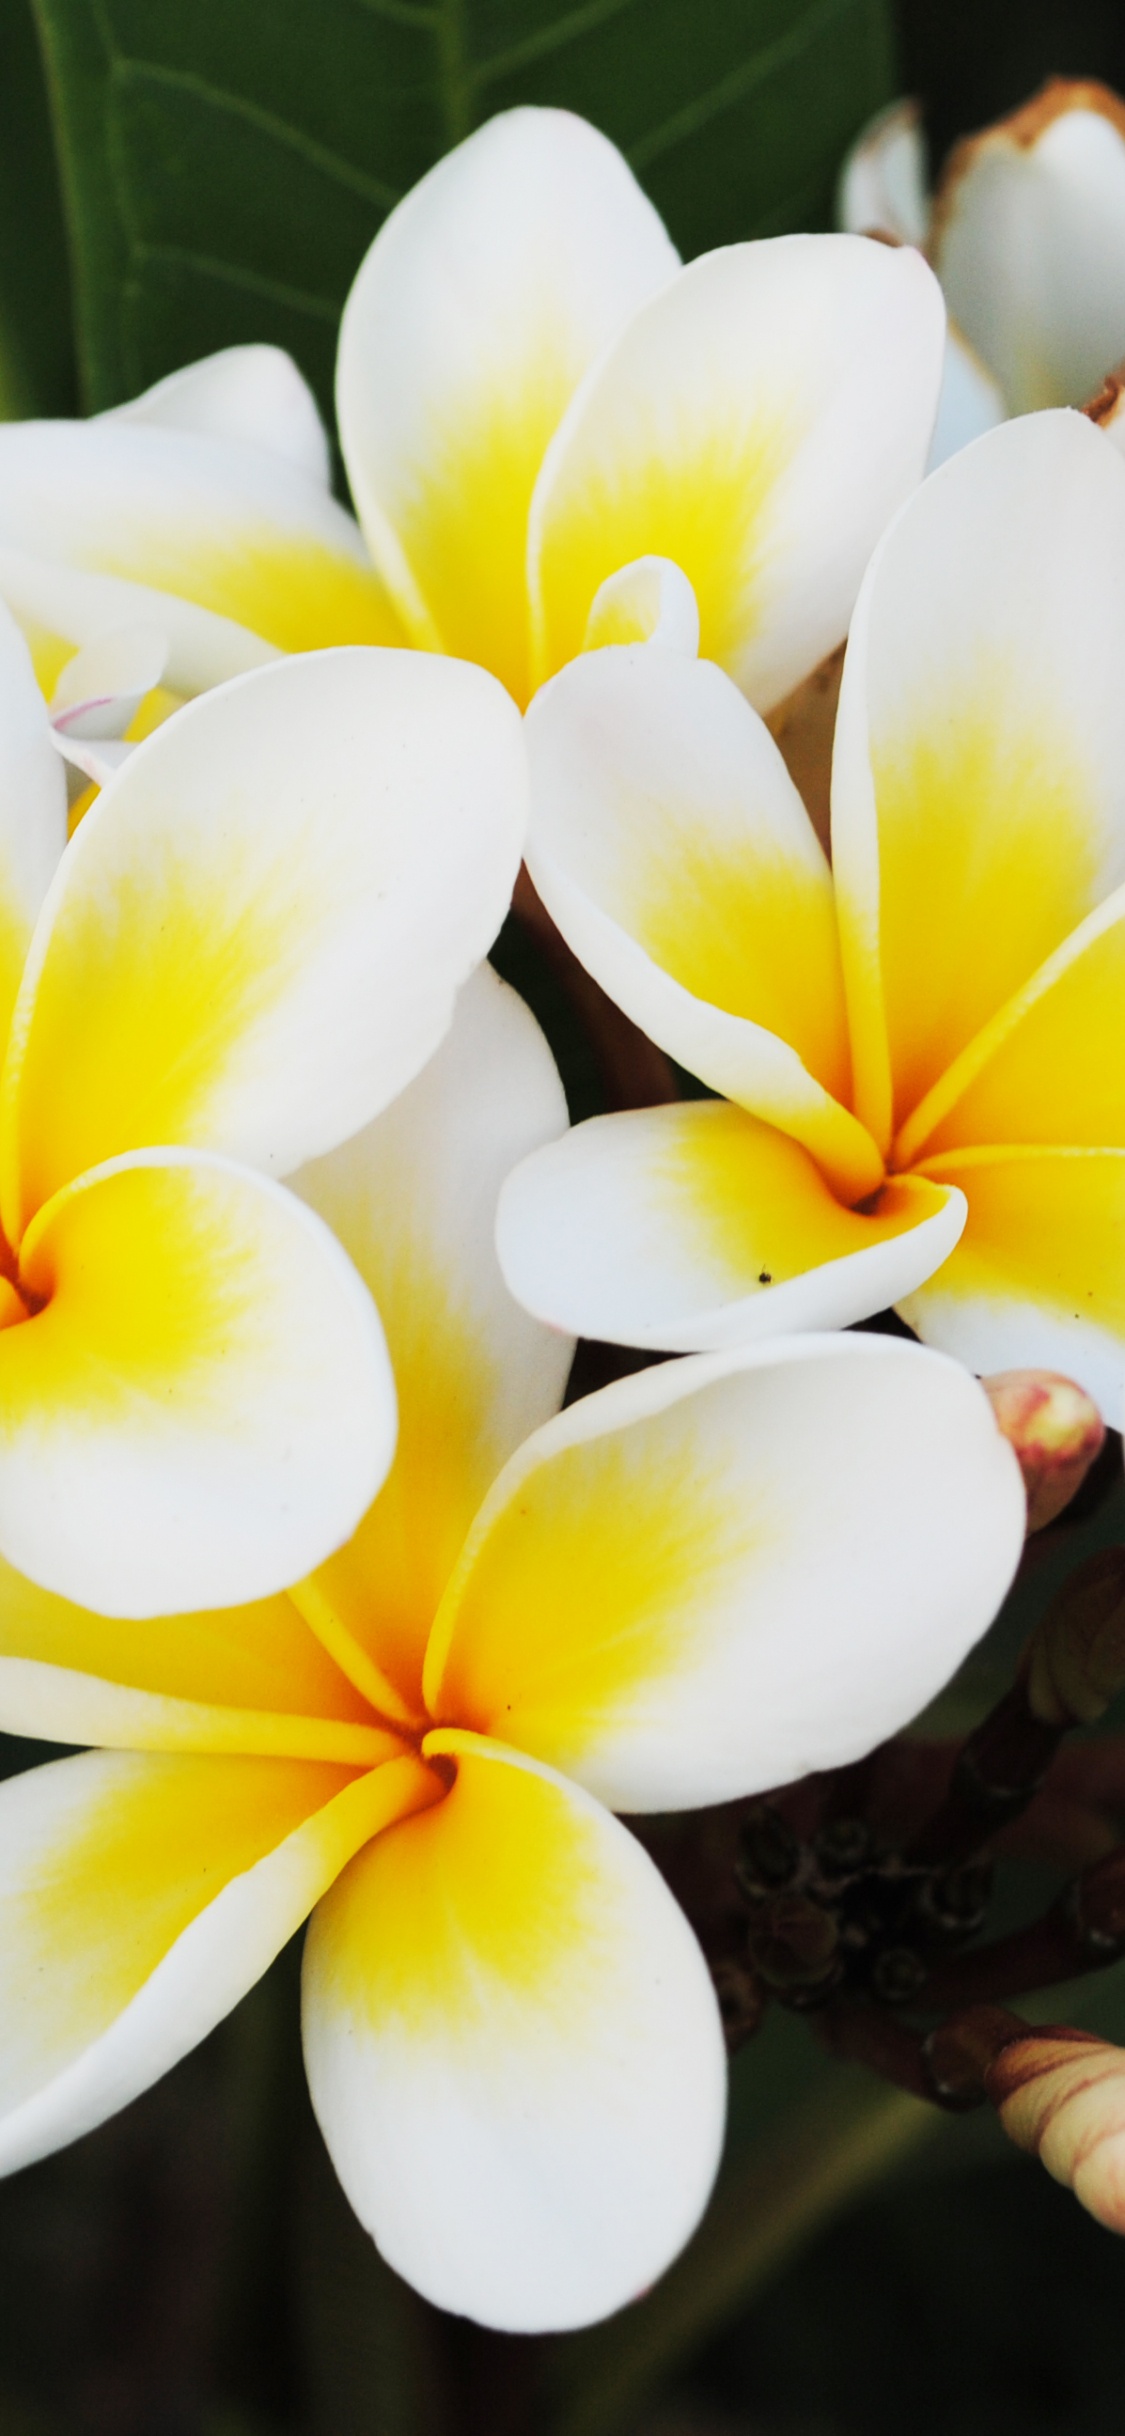 Flor Blanca y Amarilla en Fotografía de Cerca. Wallpaper in 1125x2436 Resolution